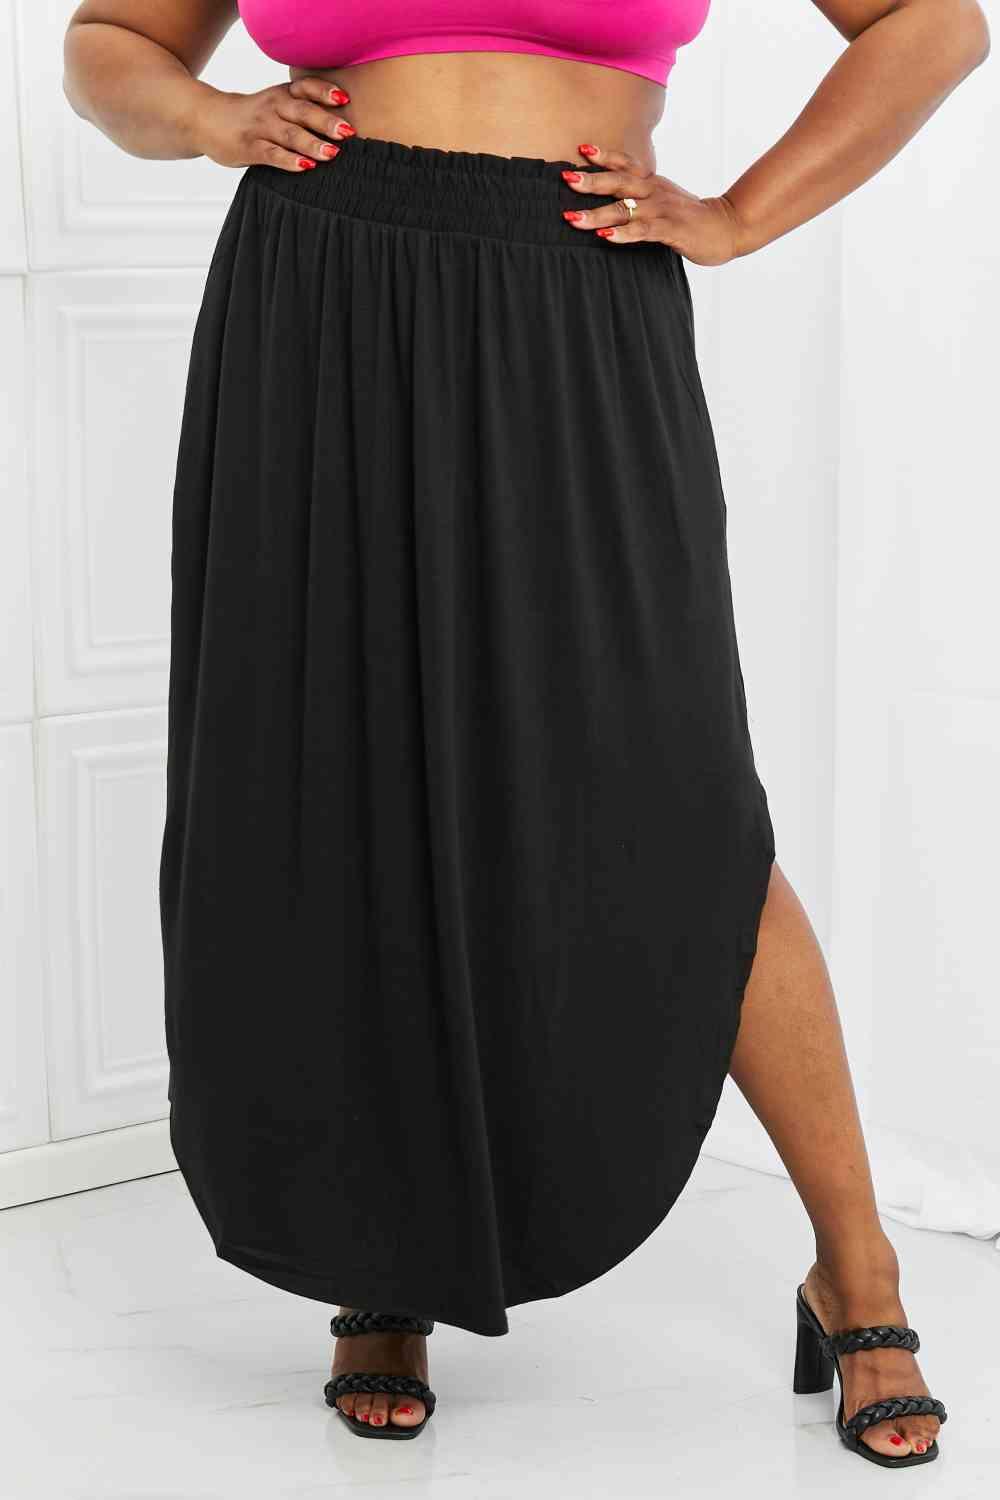 Zenana It's My Time Full Size Side Scoop Scrunch Skirt in Black - Immenzive